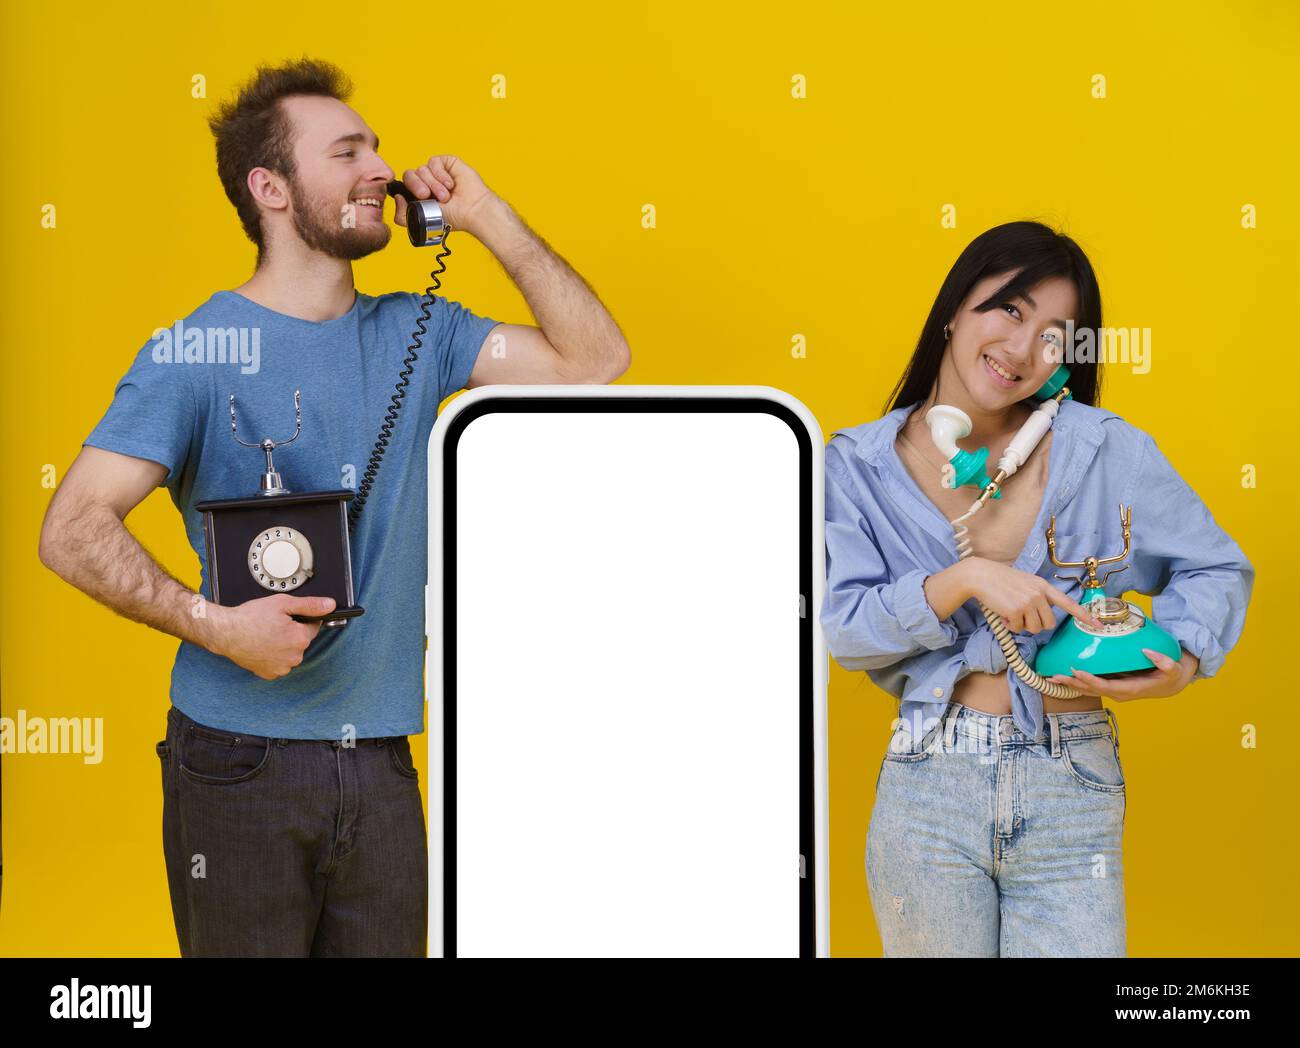 Ein hübscher Kerl und ein asiatisches Mädchen, die sich auf alten Telefonen unterhalten, lehnten sich auf ein riesiges Smartphone oder ein digitales Tablet mit leerem Bildschirm und fröhlichem Smilli Stockfoto